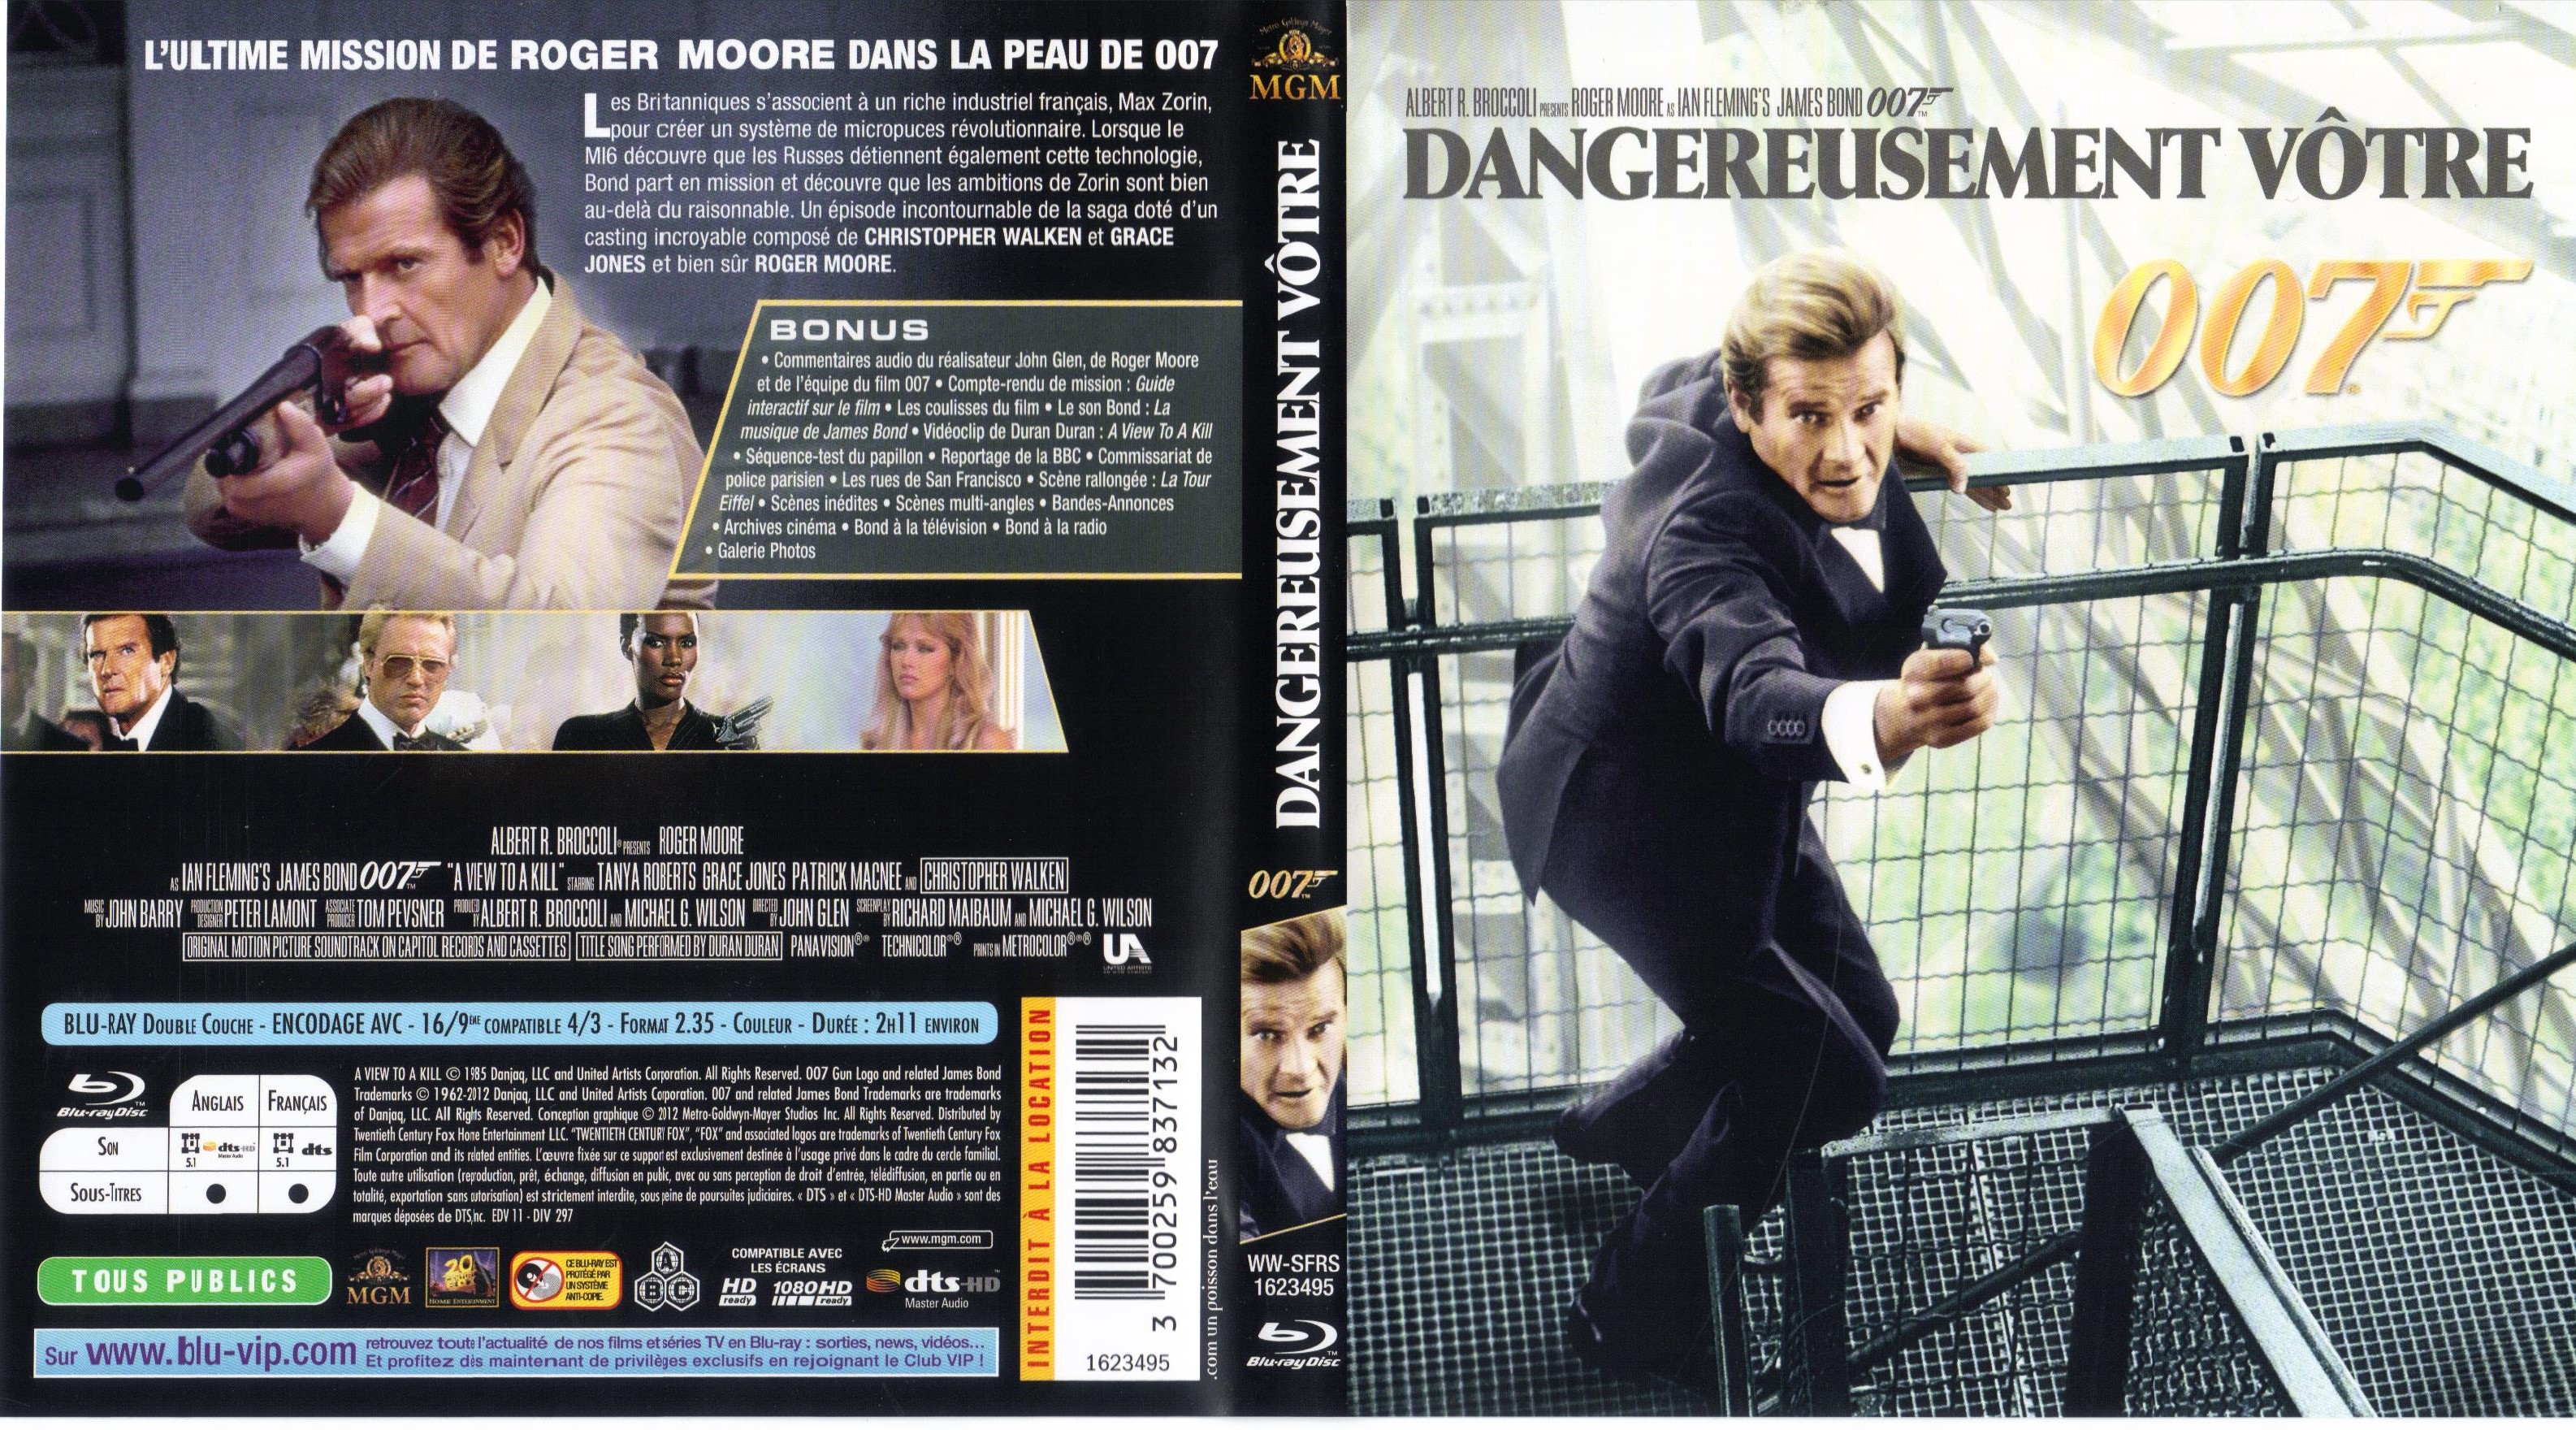 Jaquette DVD James Bond 007 Dangereusement votre (BLU-RAY)